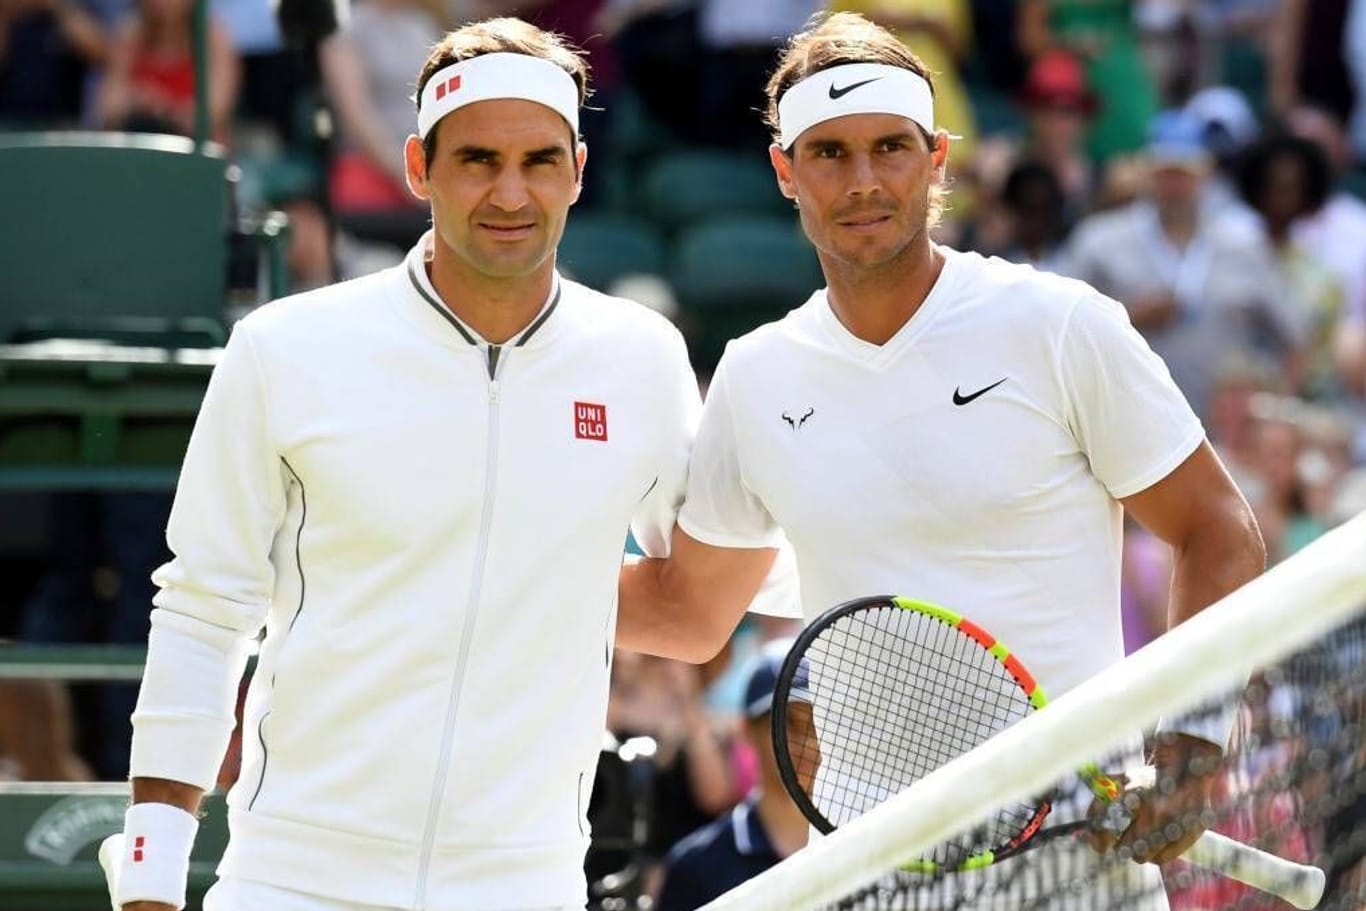 Roger Federer und Rafael Nadal in Wimbledon 2019. Die Duelle der beiden sind legendär.